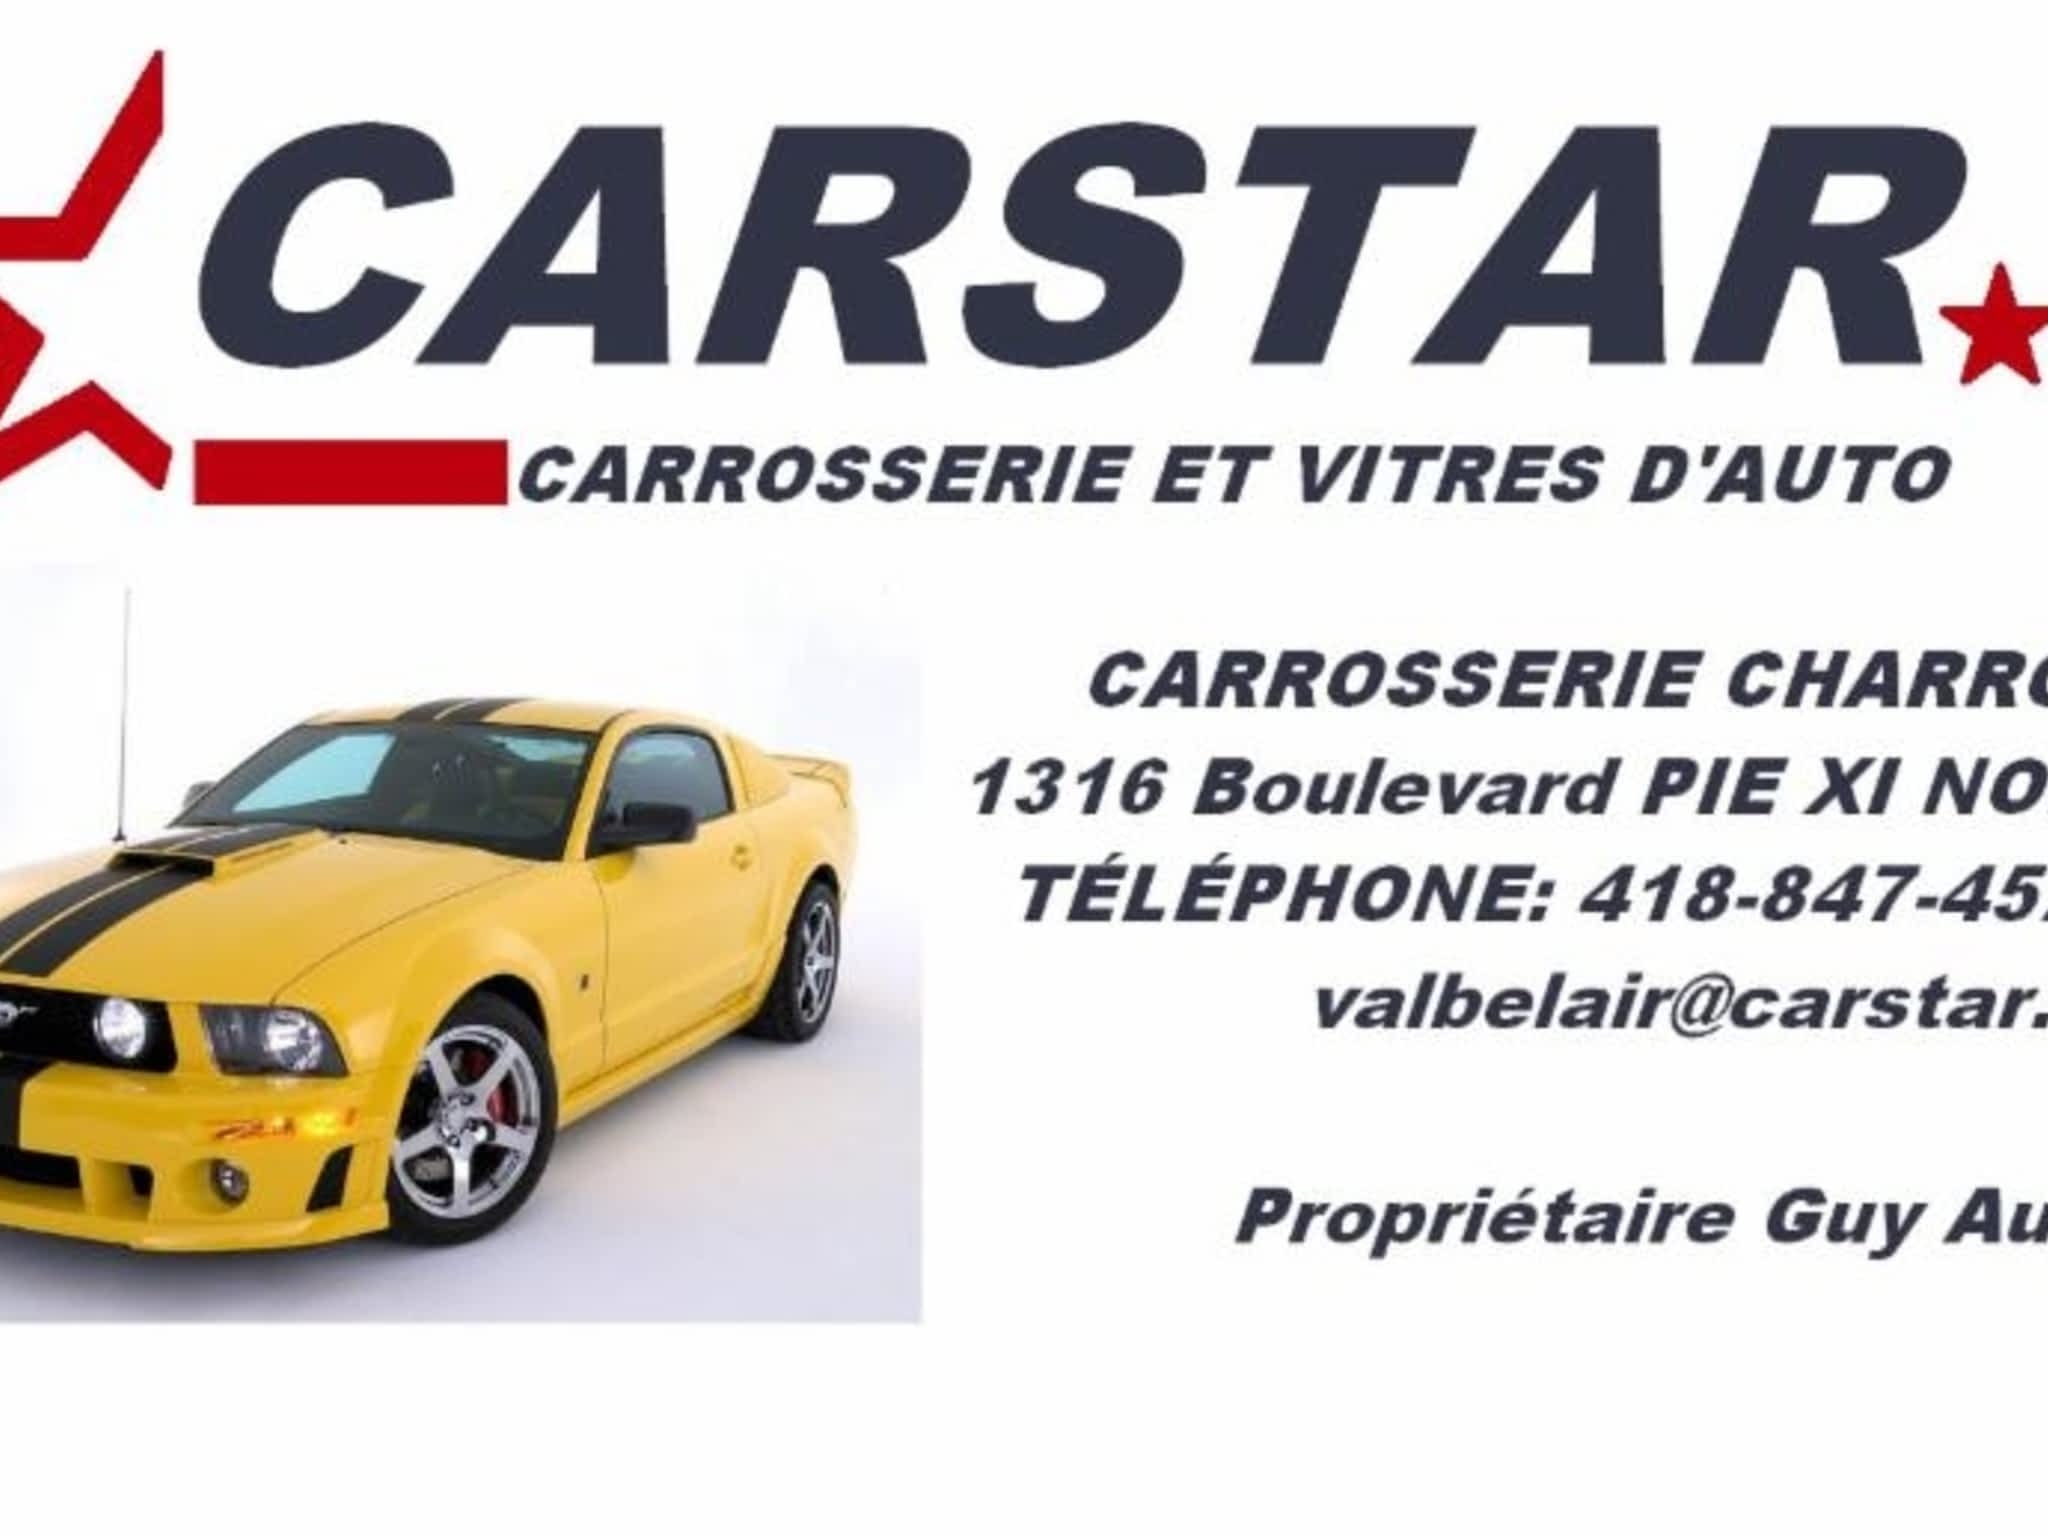 photo Carrosserie Charron/Carstar Val-Bélair